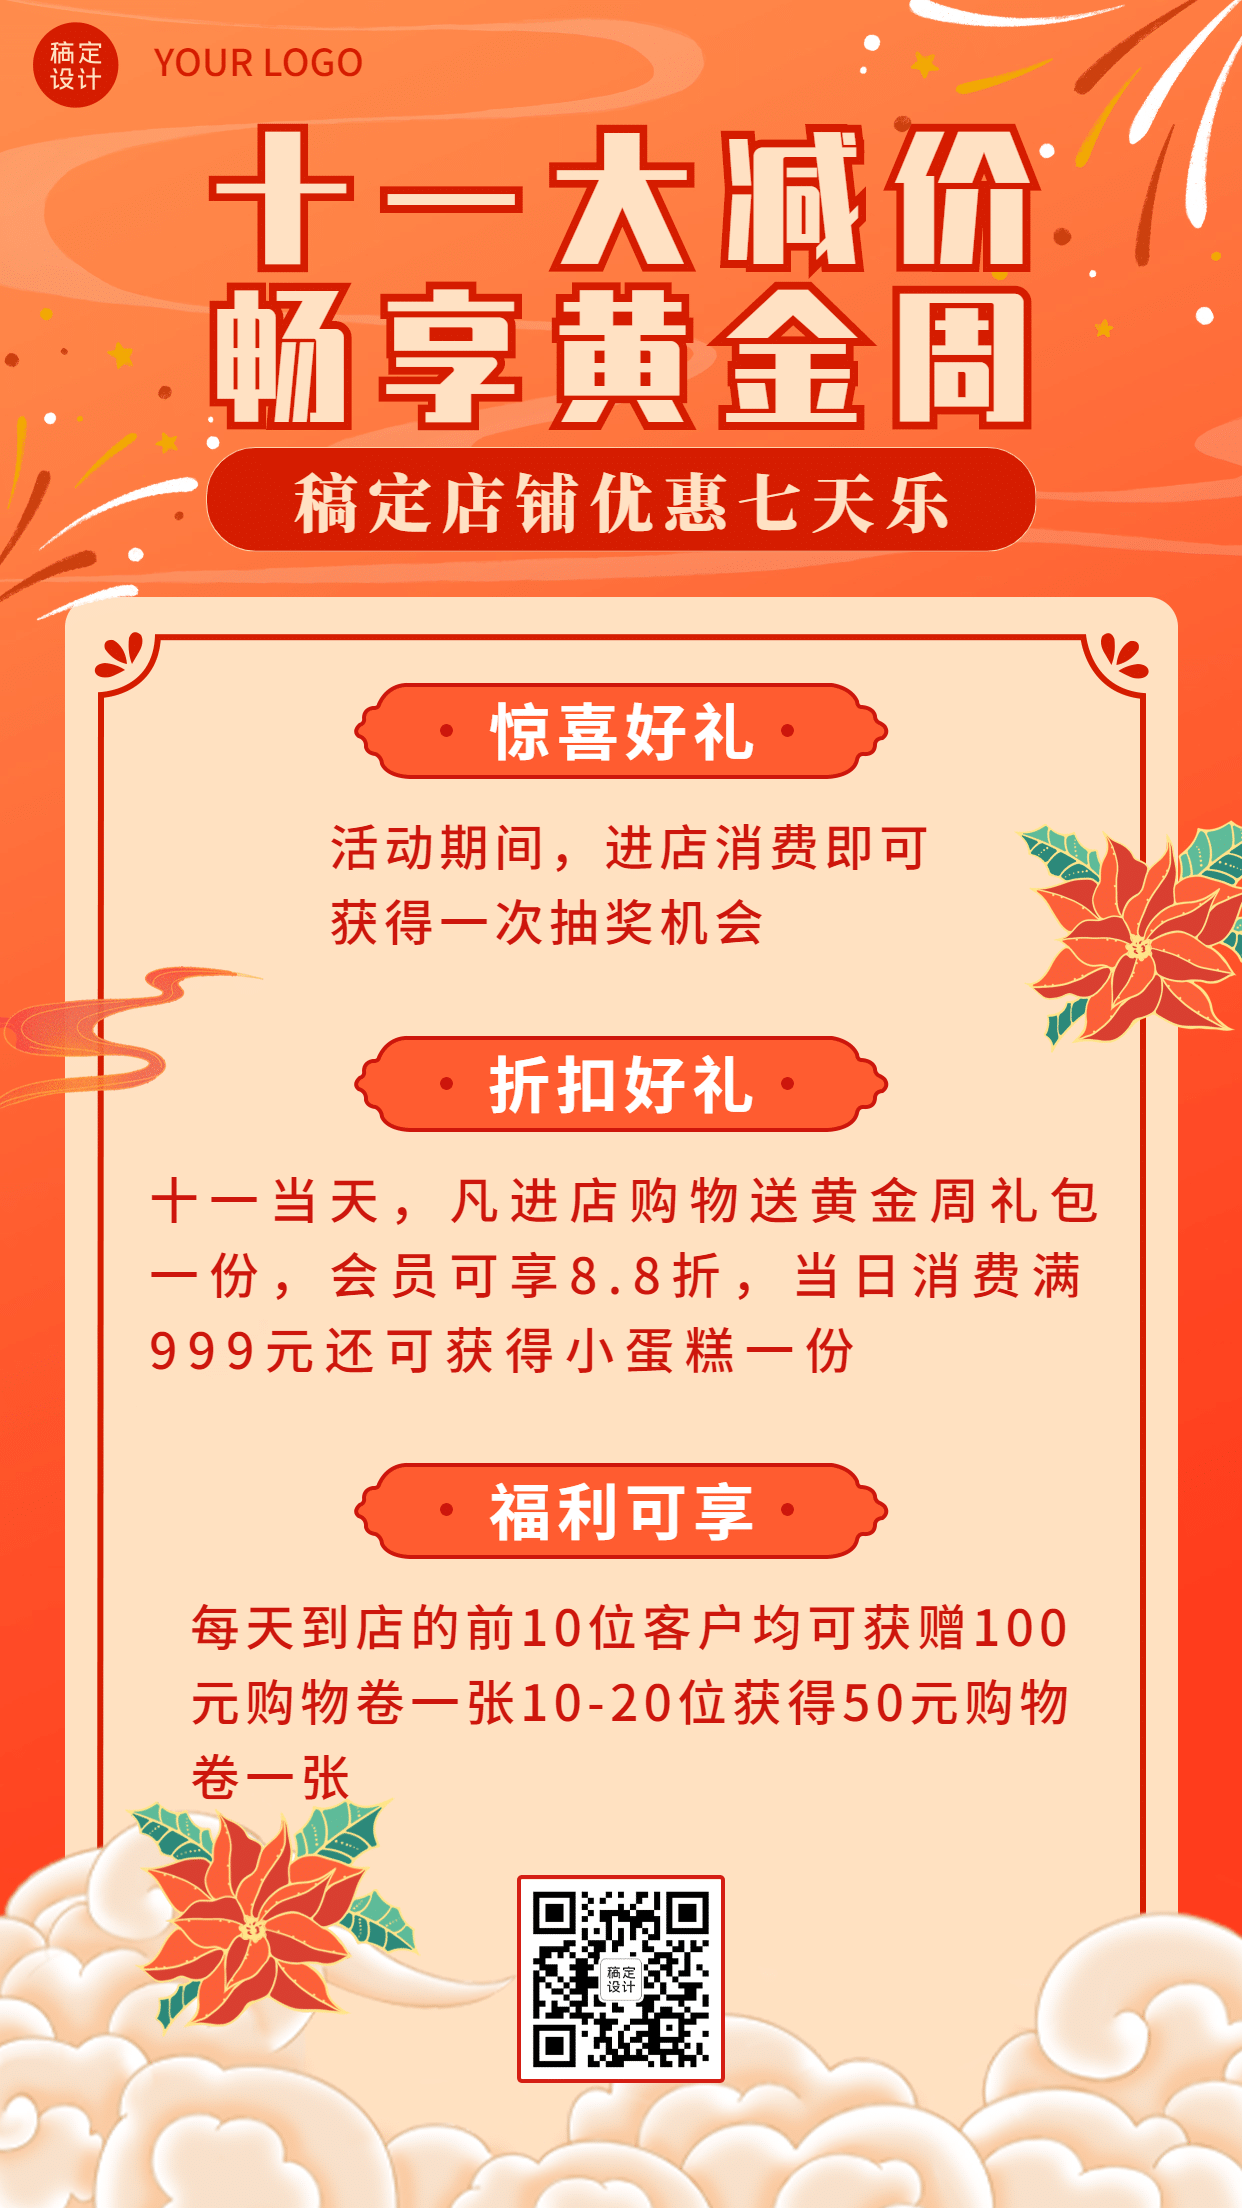 十一国庆黄金周促销活动手绘海报